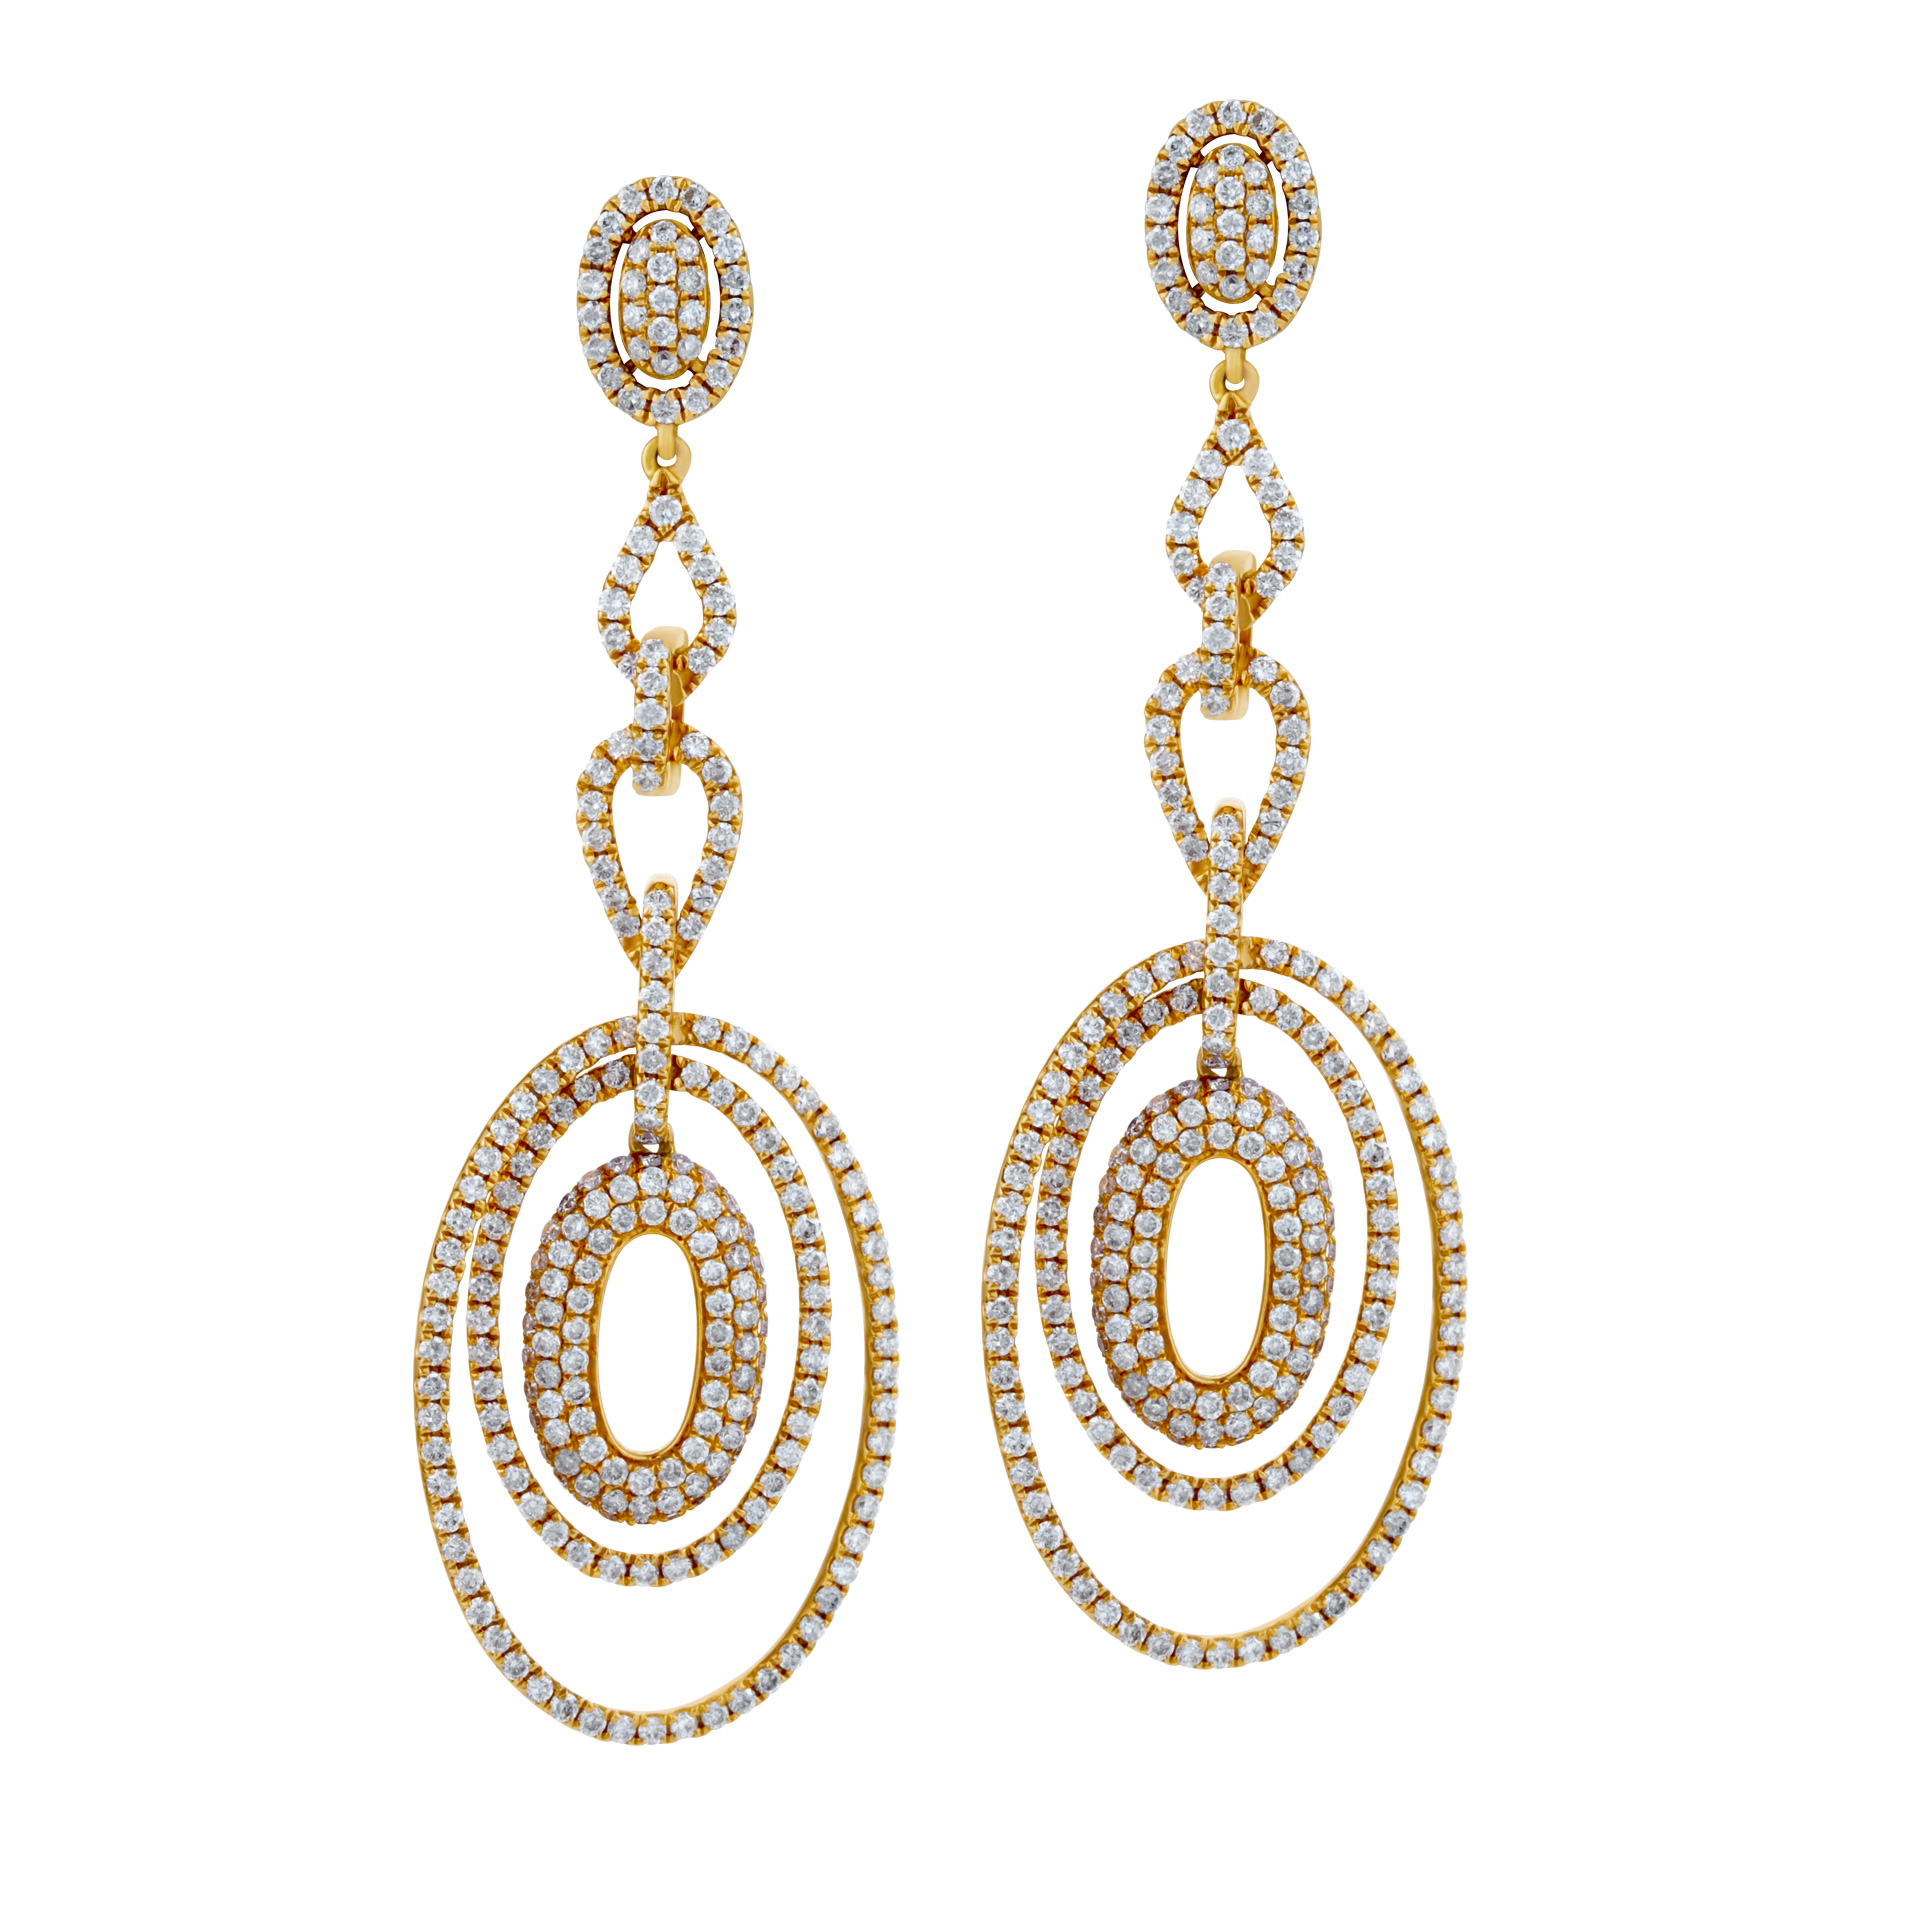 Oval drop diamond earrings in 18k